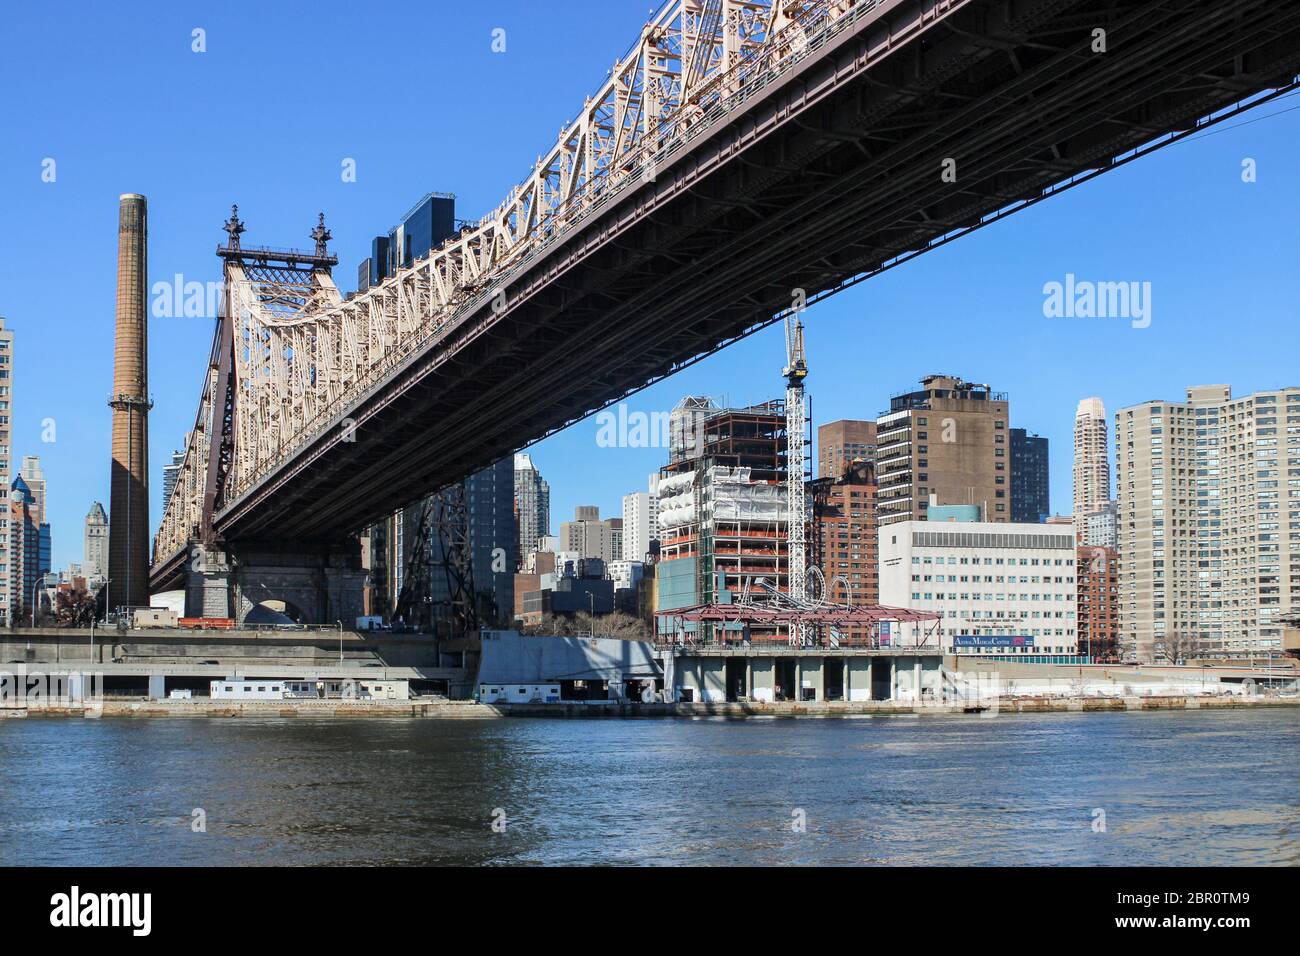 Ed Koch Queensboro Bridge, également connu sous le nom de 59th Street Bridge, au-dessus de la rivière East, vu de Roosevelt Island à New York City, États-Unis Banque D'Images